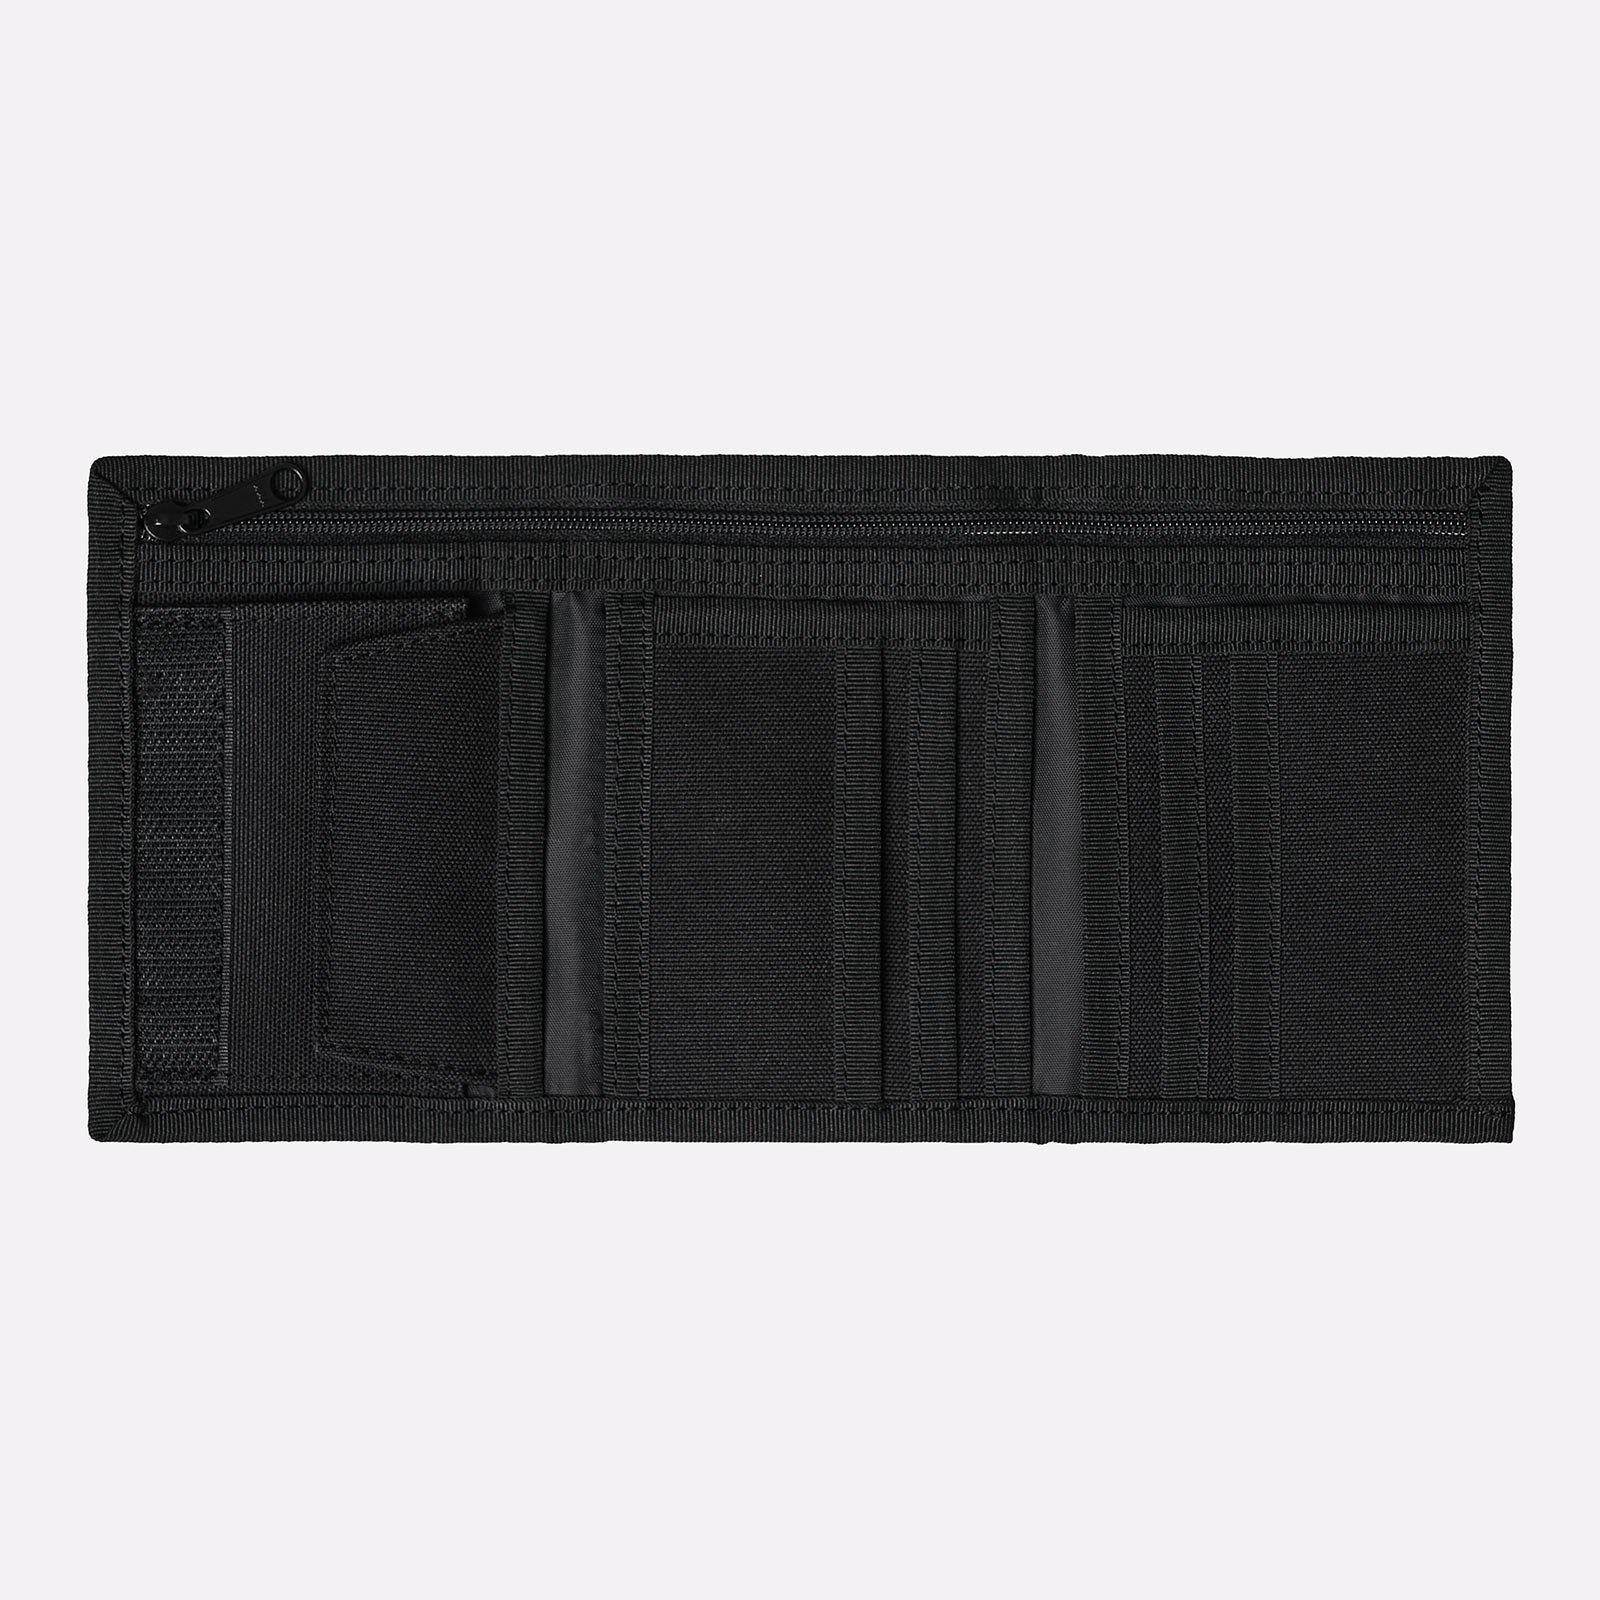  черный бумажник Carhartt WIP Alec Wallet I031471-black - цена, описание, фото 3